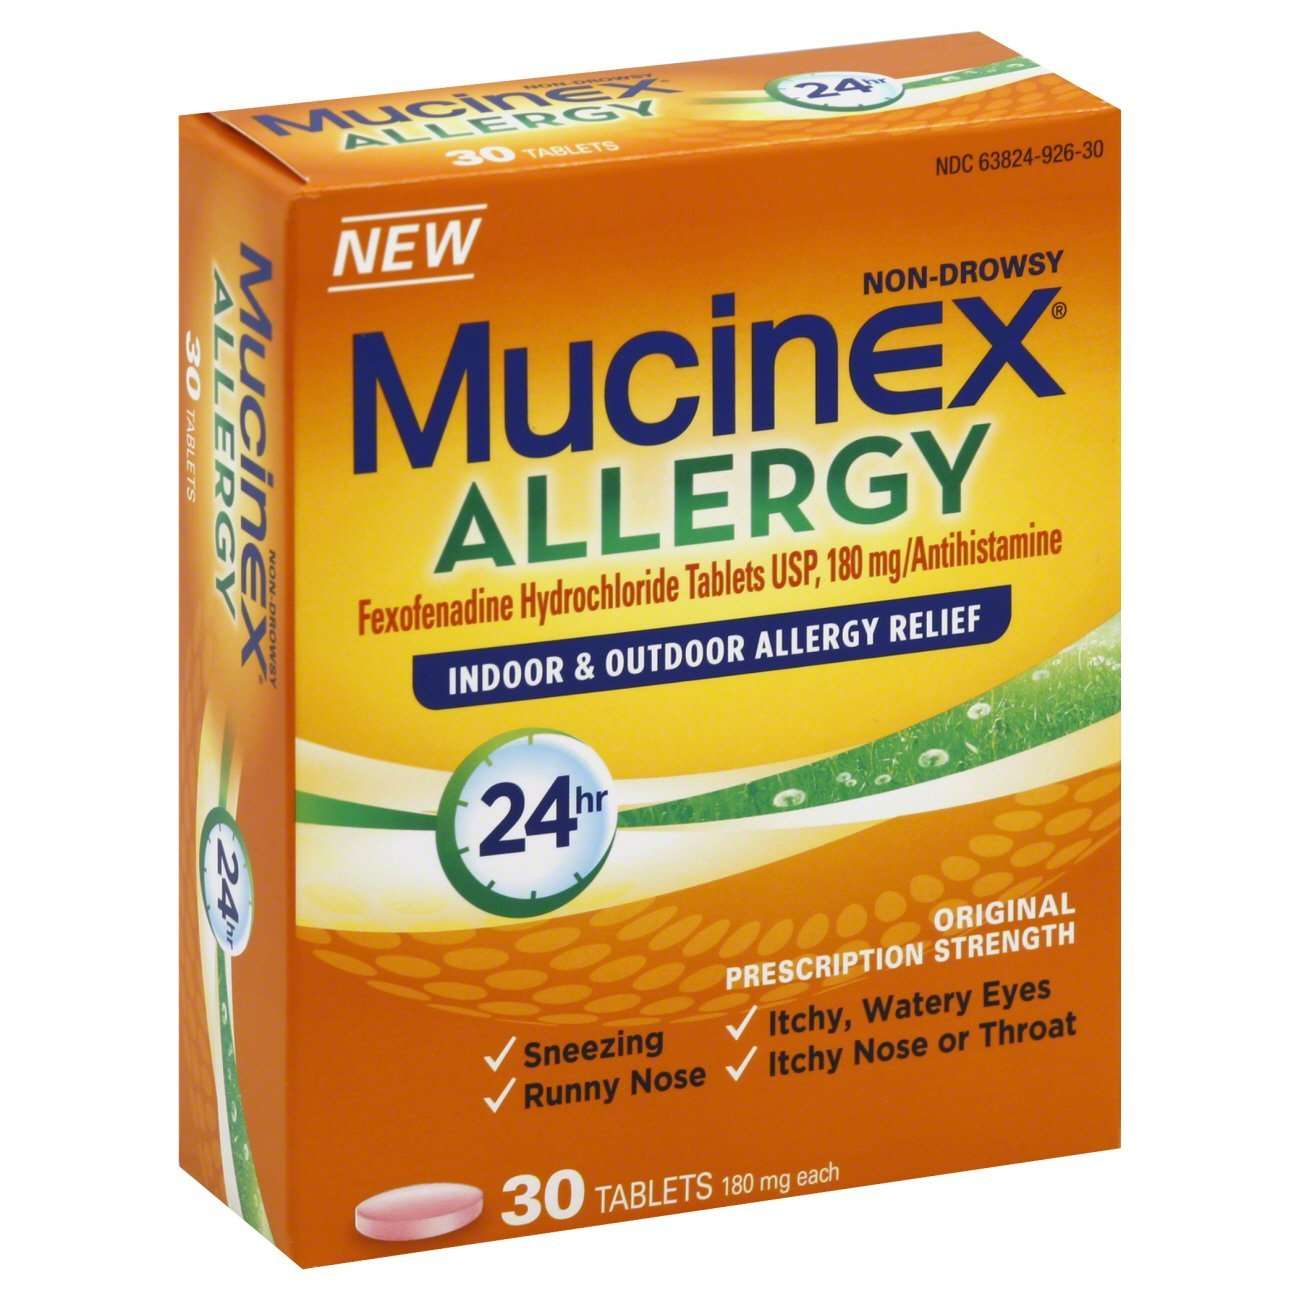 Mucinex Allergy 24 Hour Indoor & Outdoor Allergy Relief ...